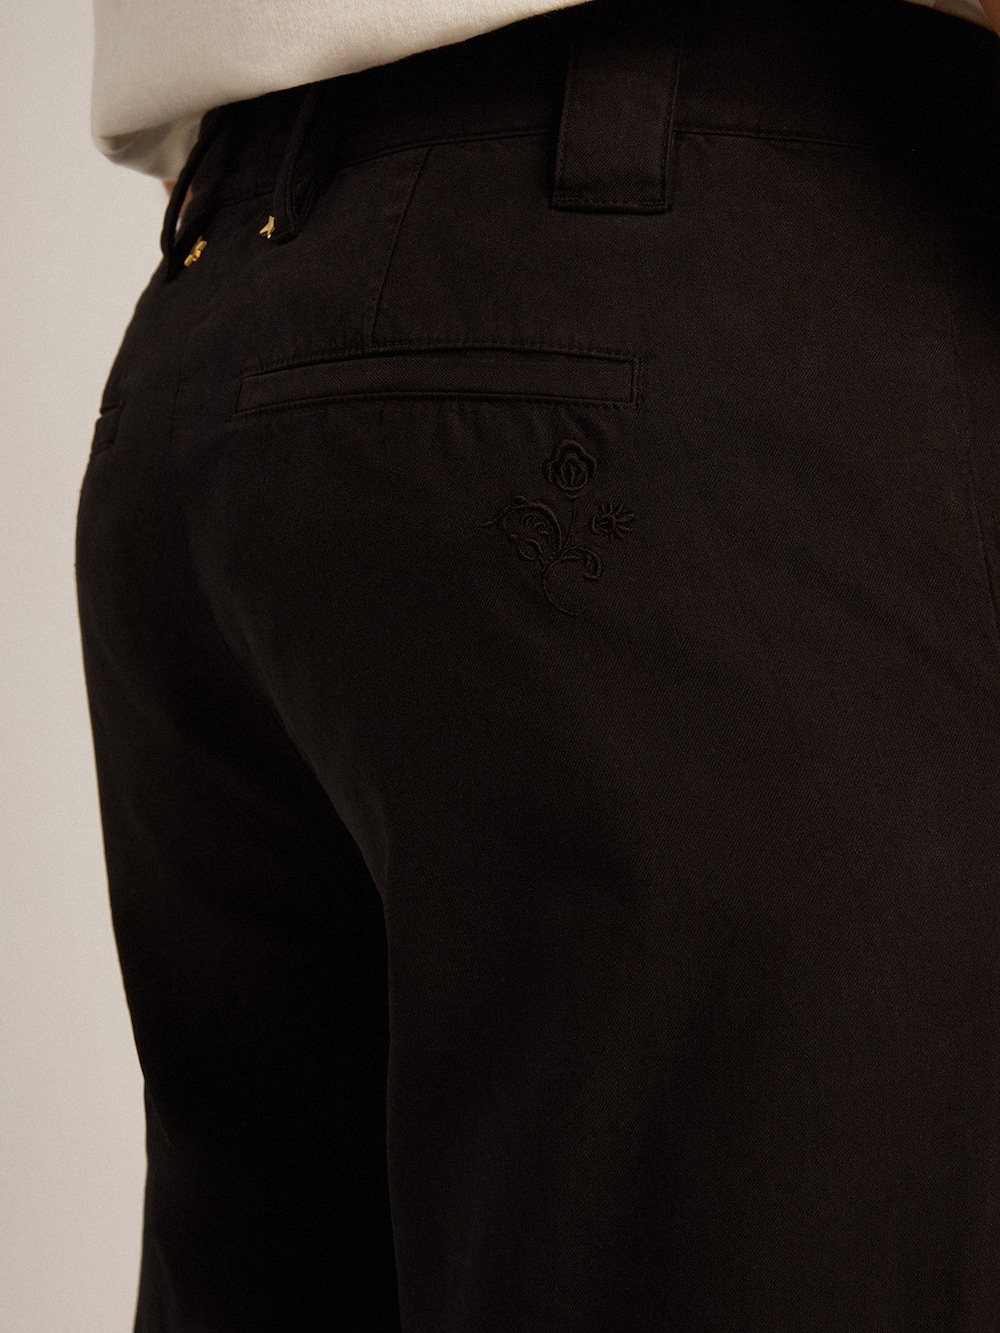 Golden Goose - Pantalón chino de hombre en algodón color negro in 